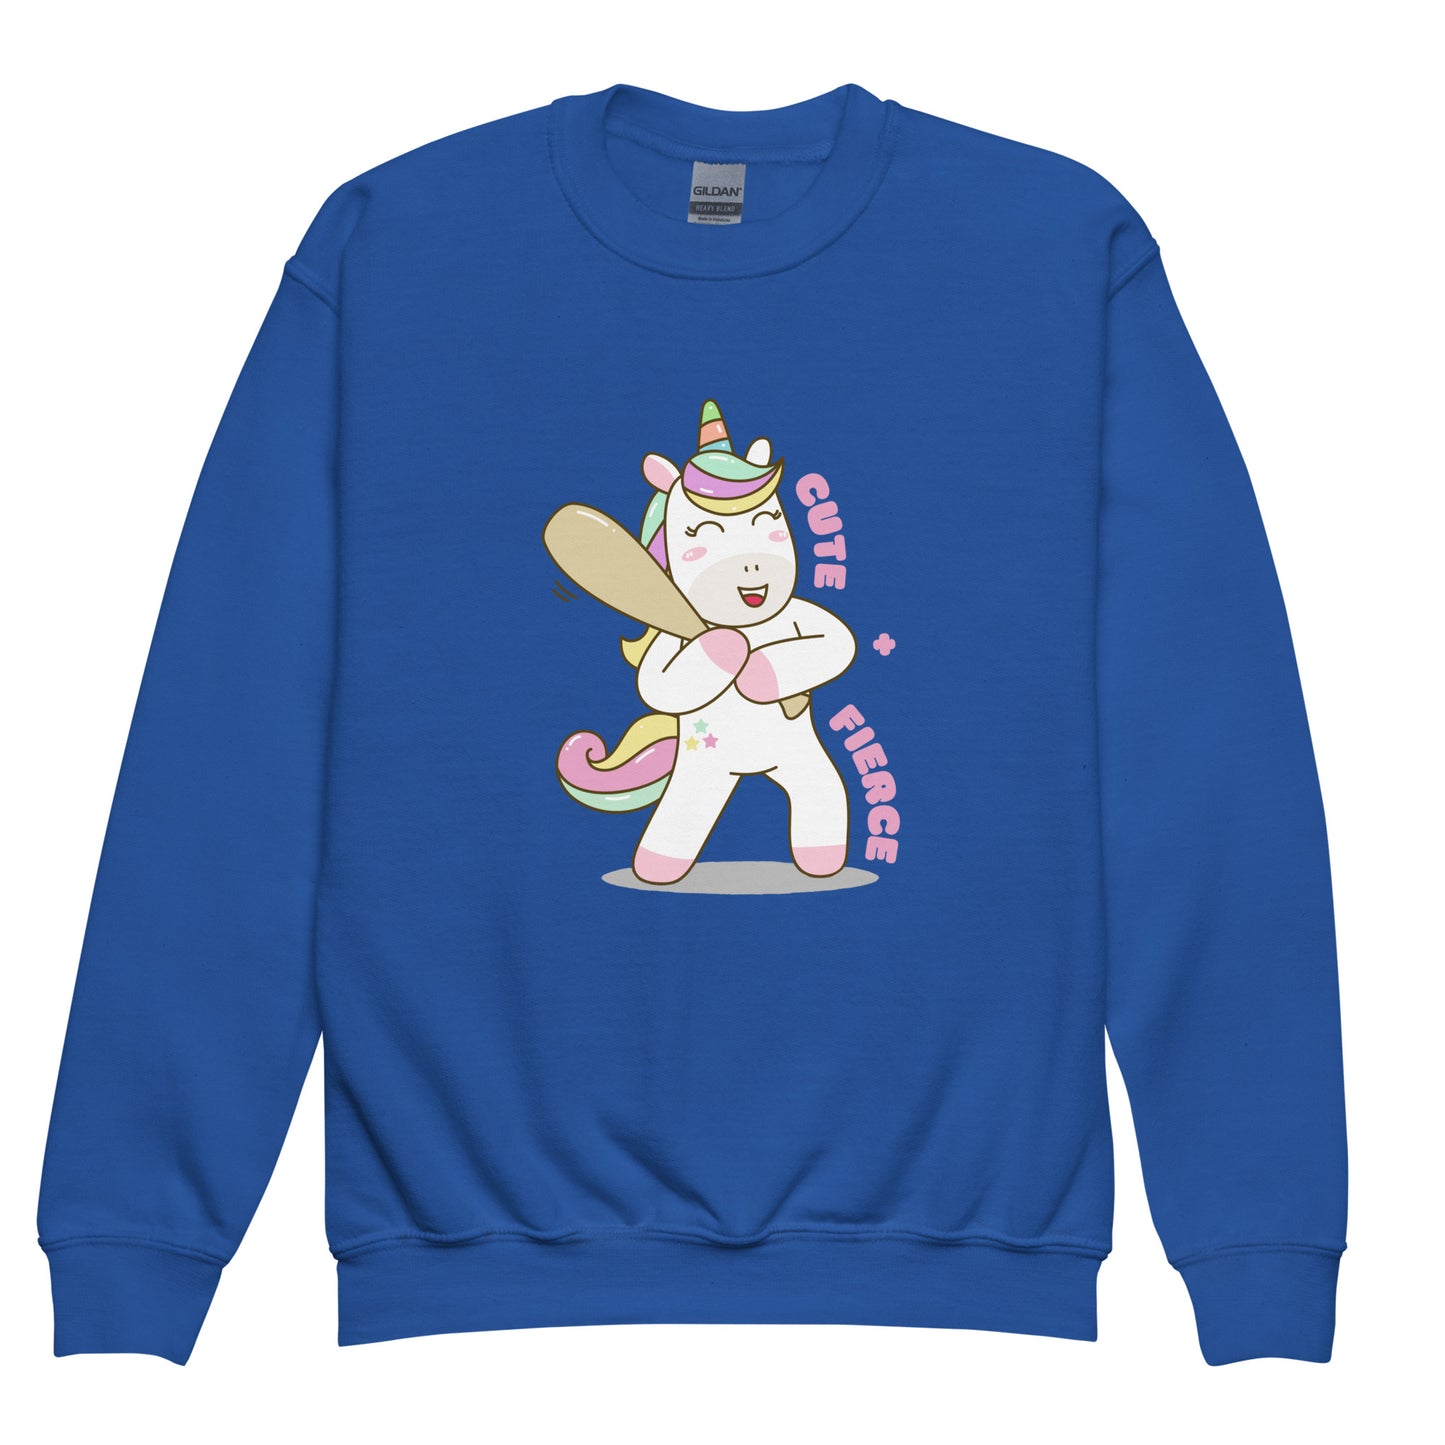 Unicorn - Youth Crewneck Sweatshirt